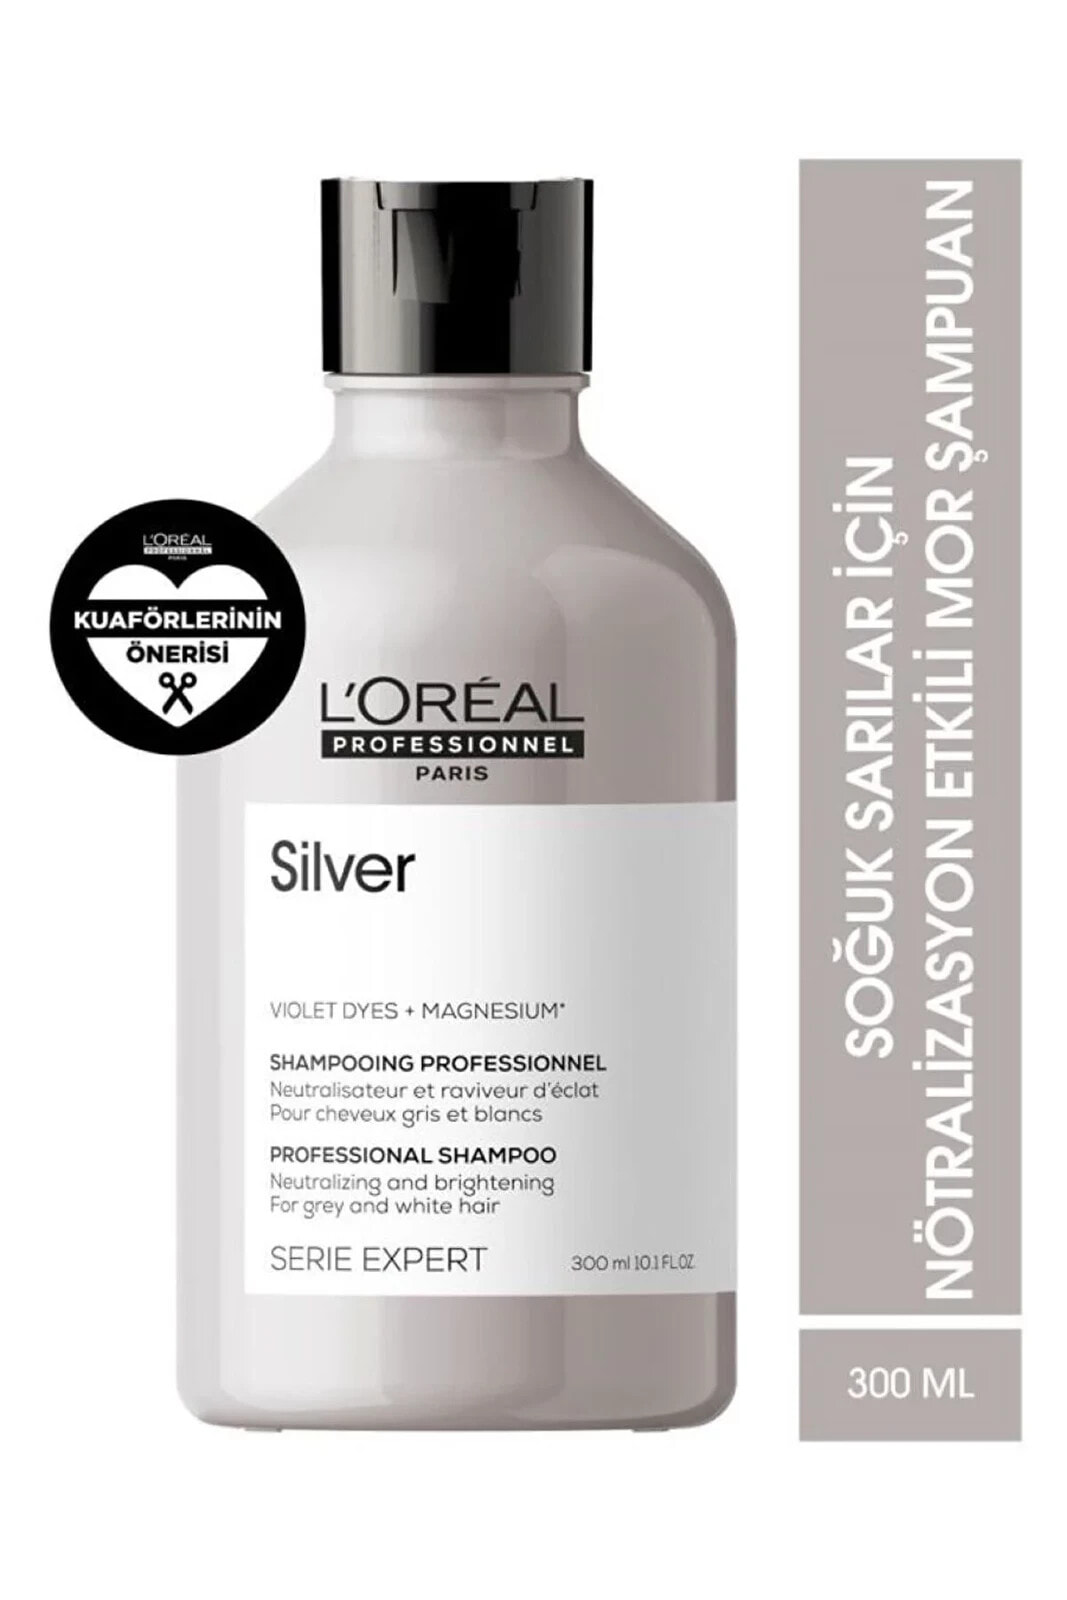 LOREAL Silver Gri ve Beyaz Saçlar İçin Parlaklık-Yumuşaklık Veren Şampuan 300mlSED666463679313169463